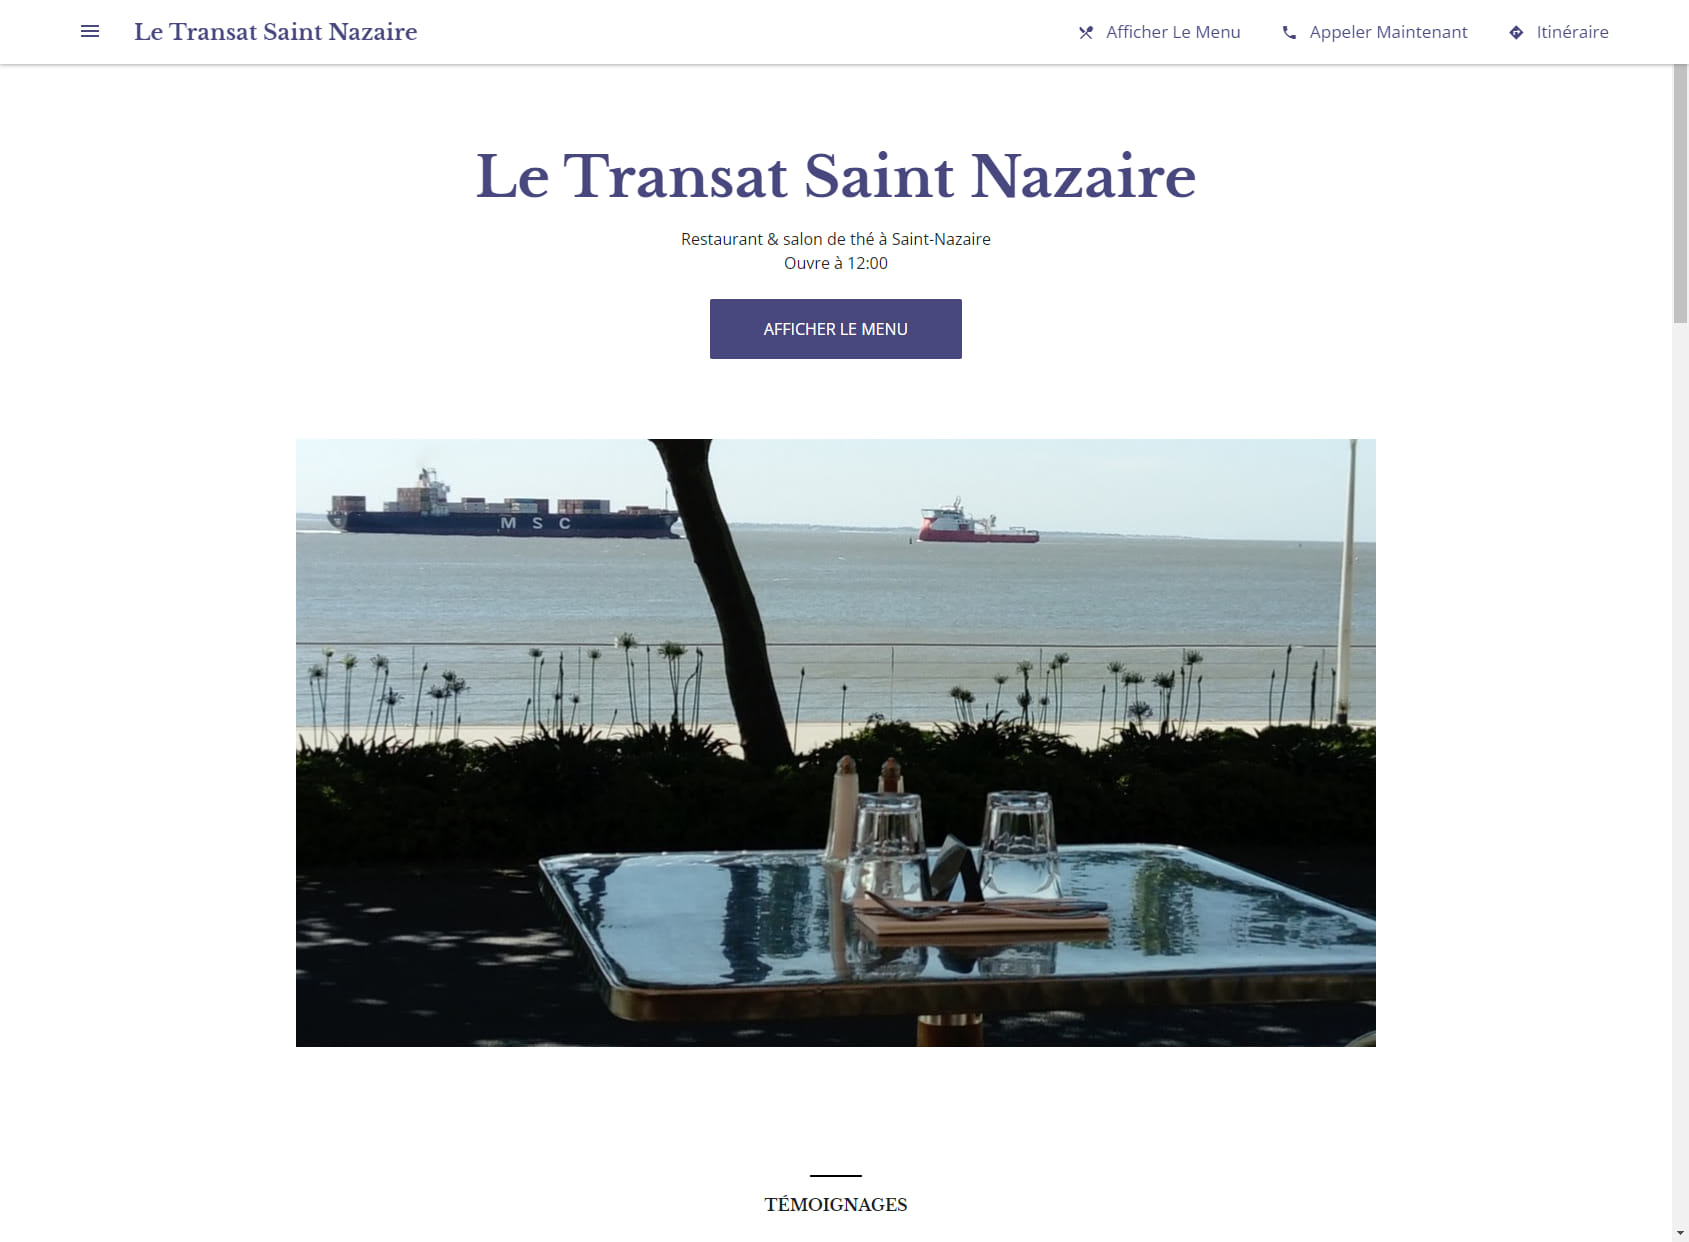 Le Transat Saint Nazaire